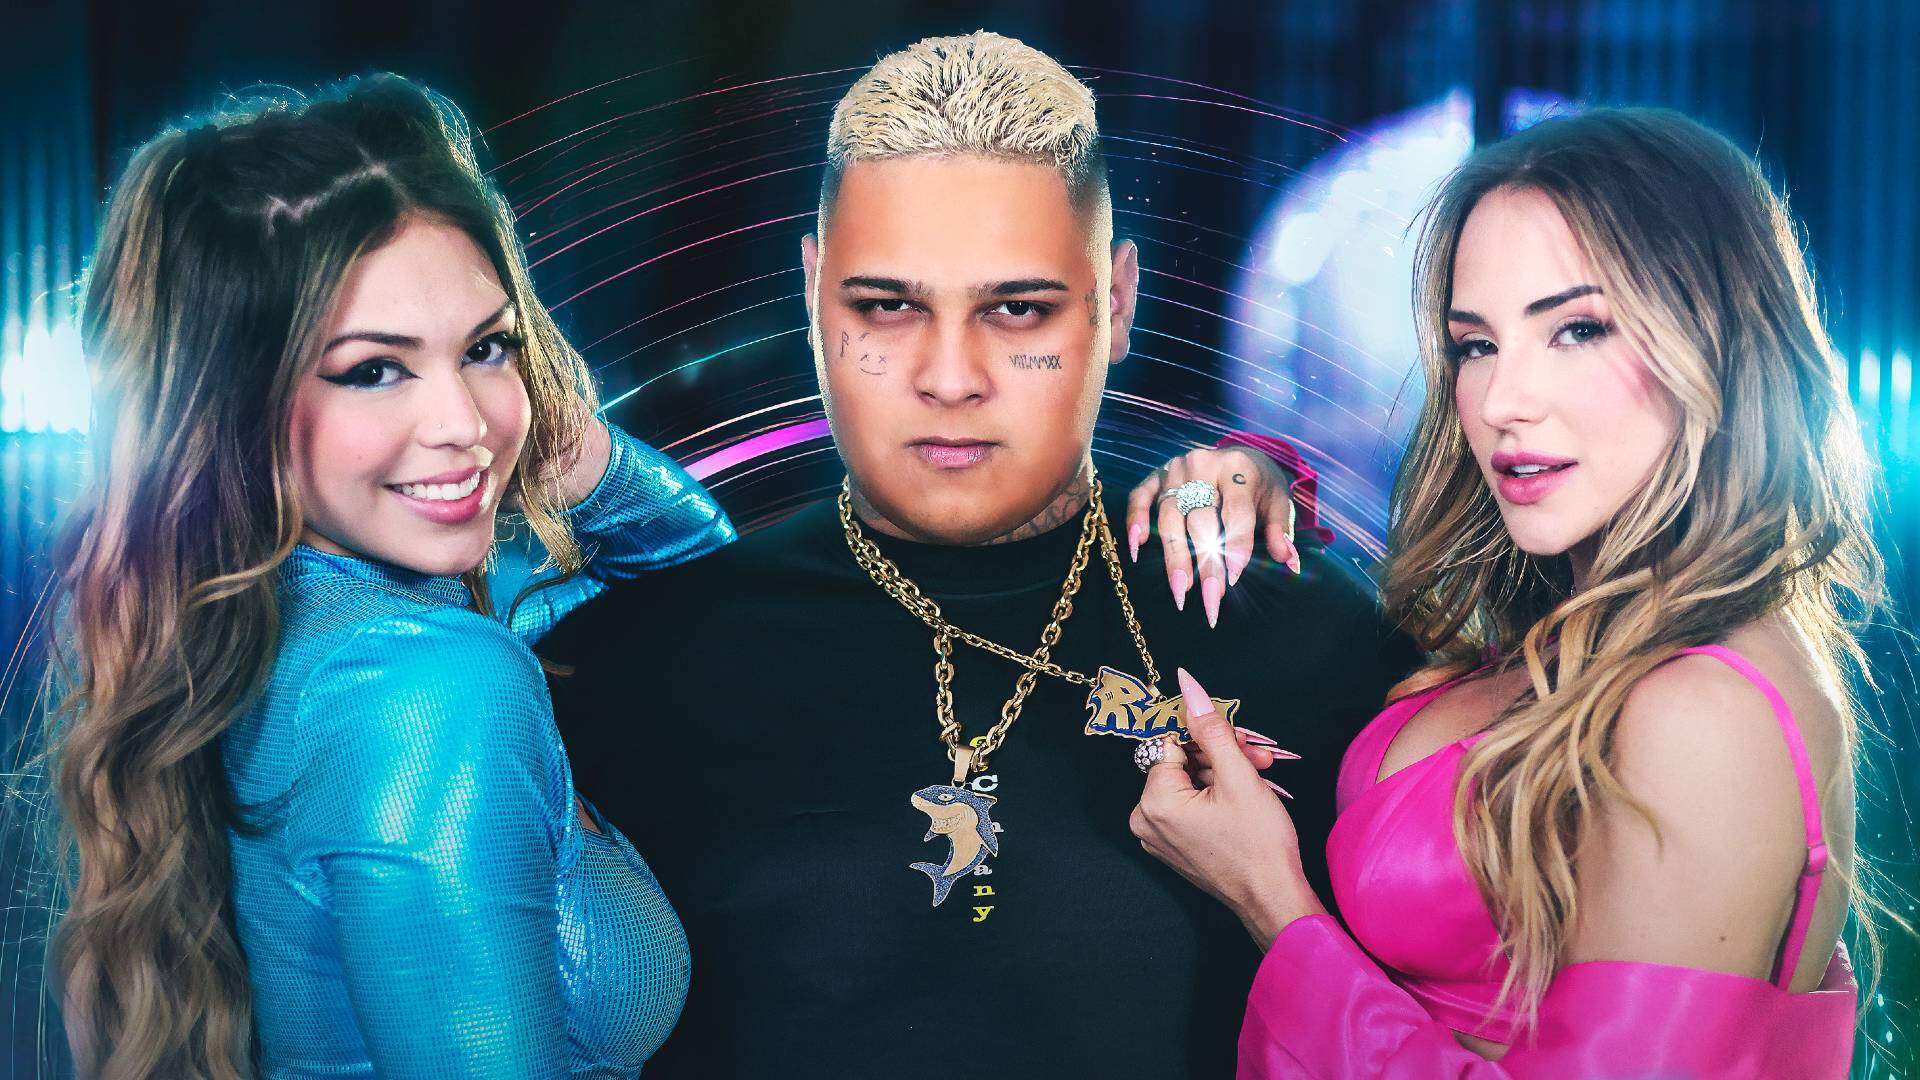 Misturando funknejo com sample de famoso hit dos anos 2000, Gabi Martins lança clipe dançante ao lado de Melody e MC Ryan SP - Metropolitana FM